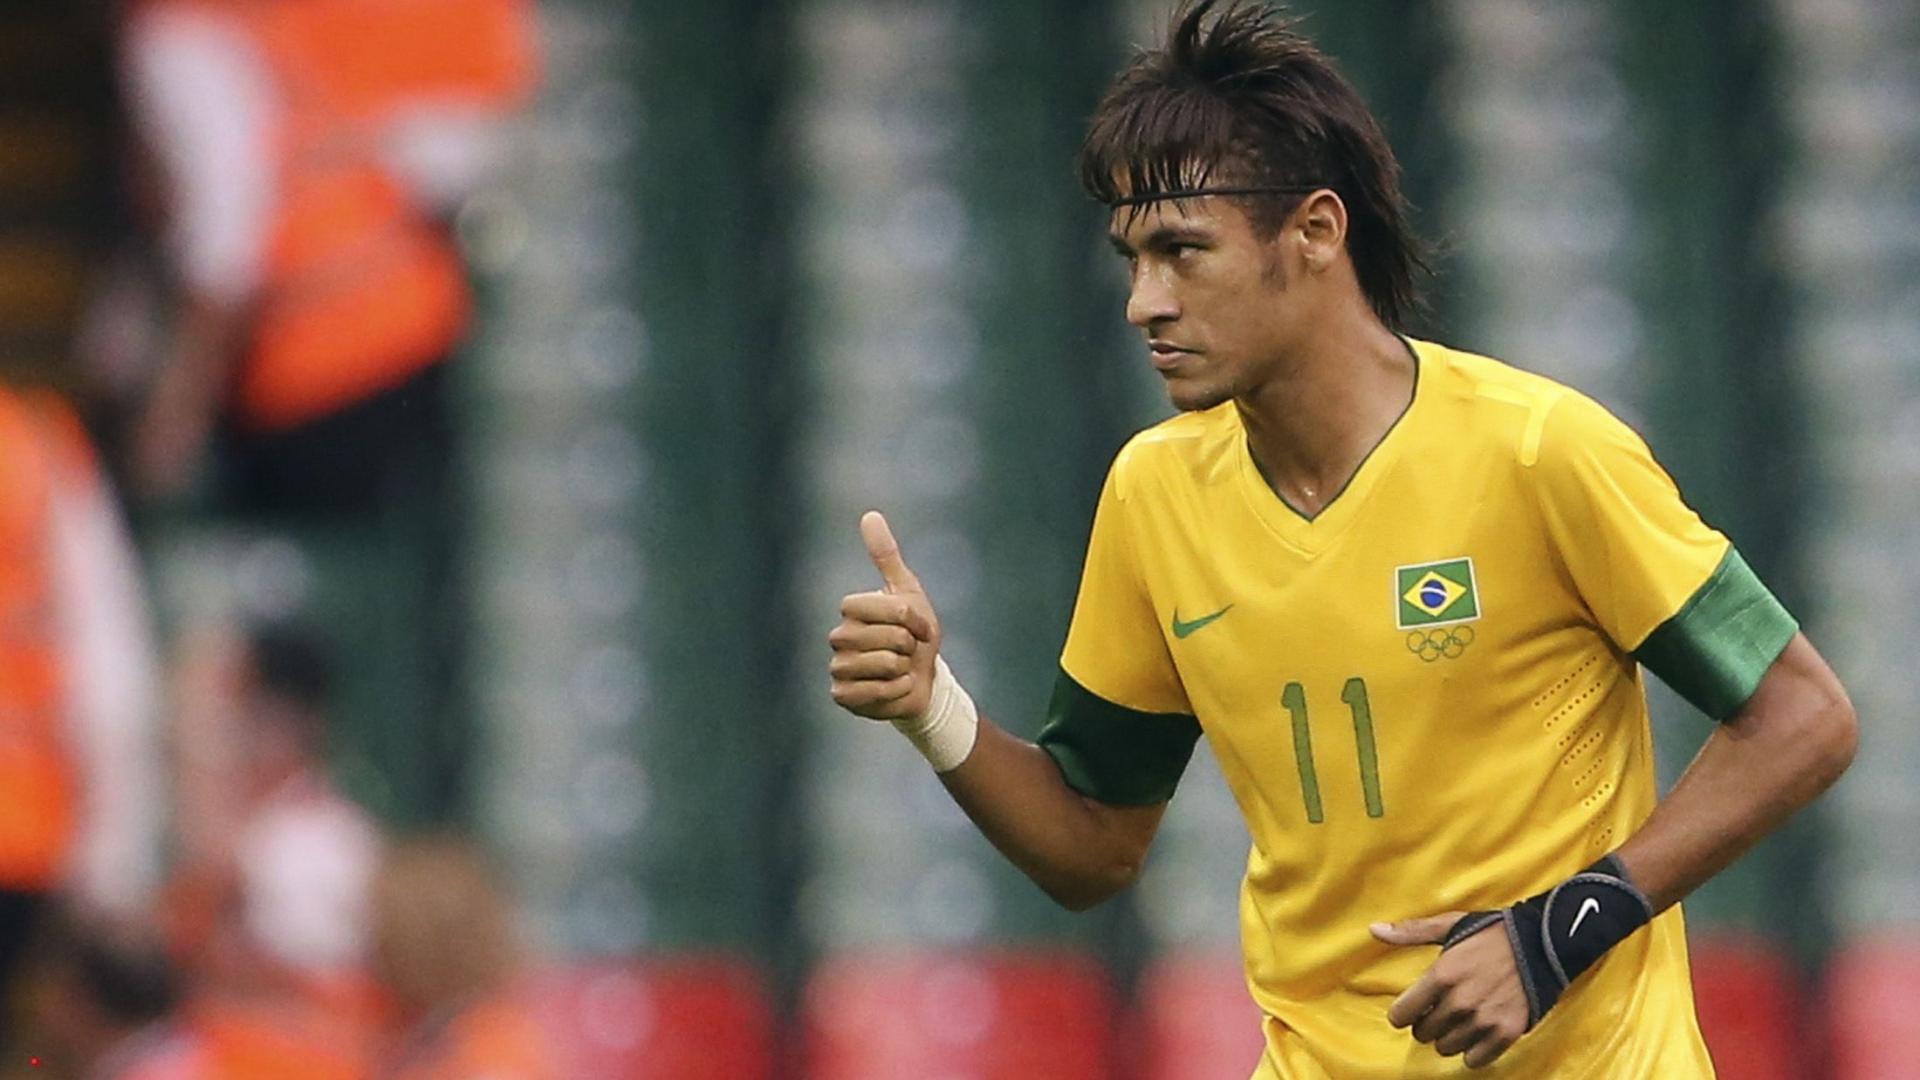 Neymar Brazil Hd Wallpaper - Neymar 20 Years Old - 1920x1080 Wallpaper -  